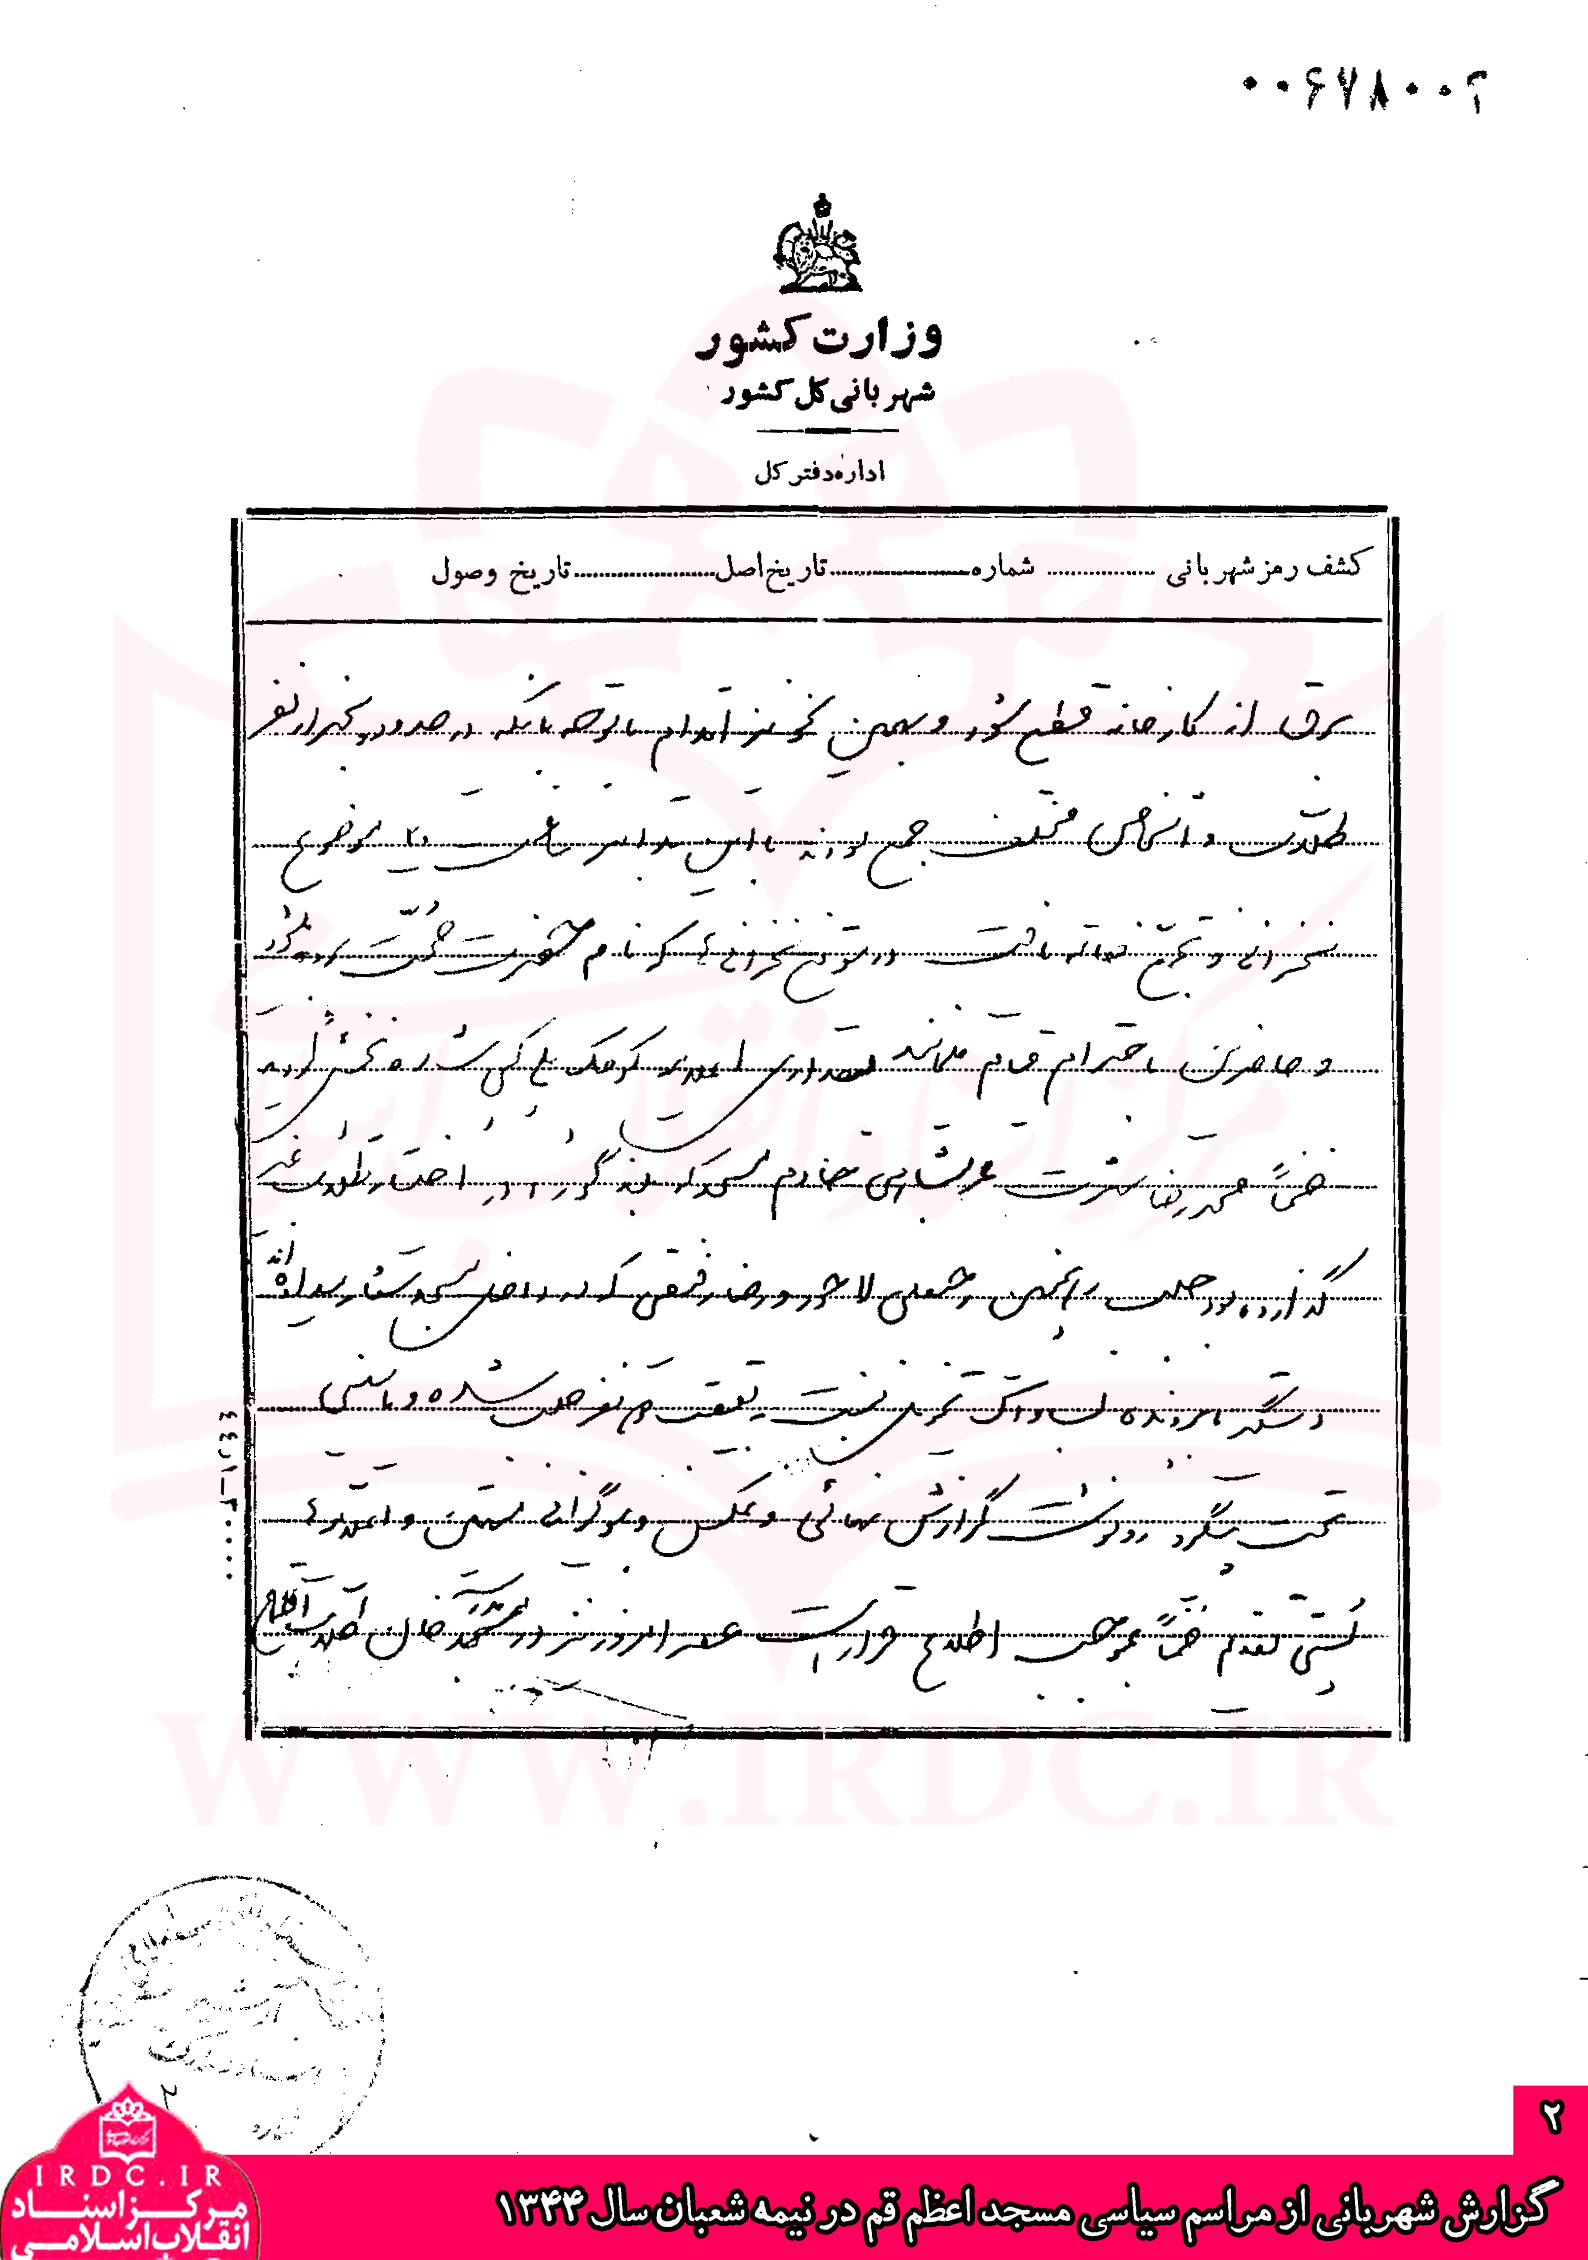 گزارش شهربانی از مراسم سیاسی مسجد اعظم قم در نیمه شعبان سال 1344